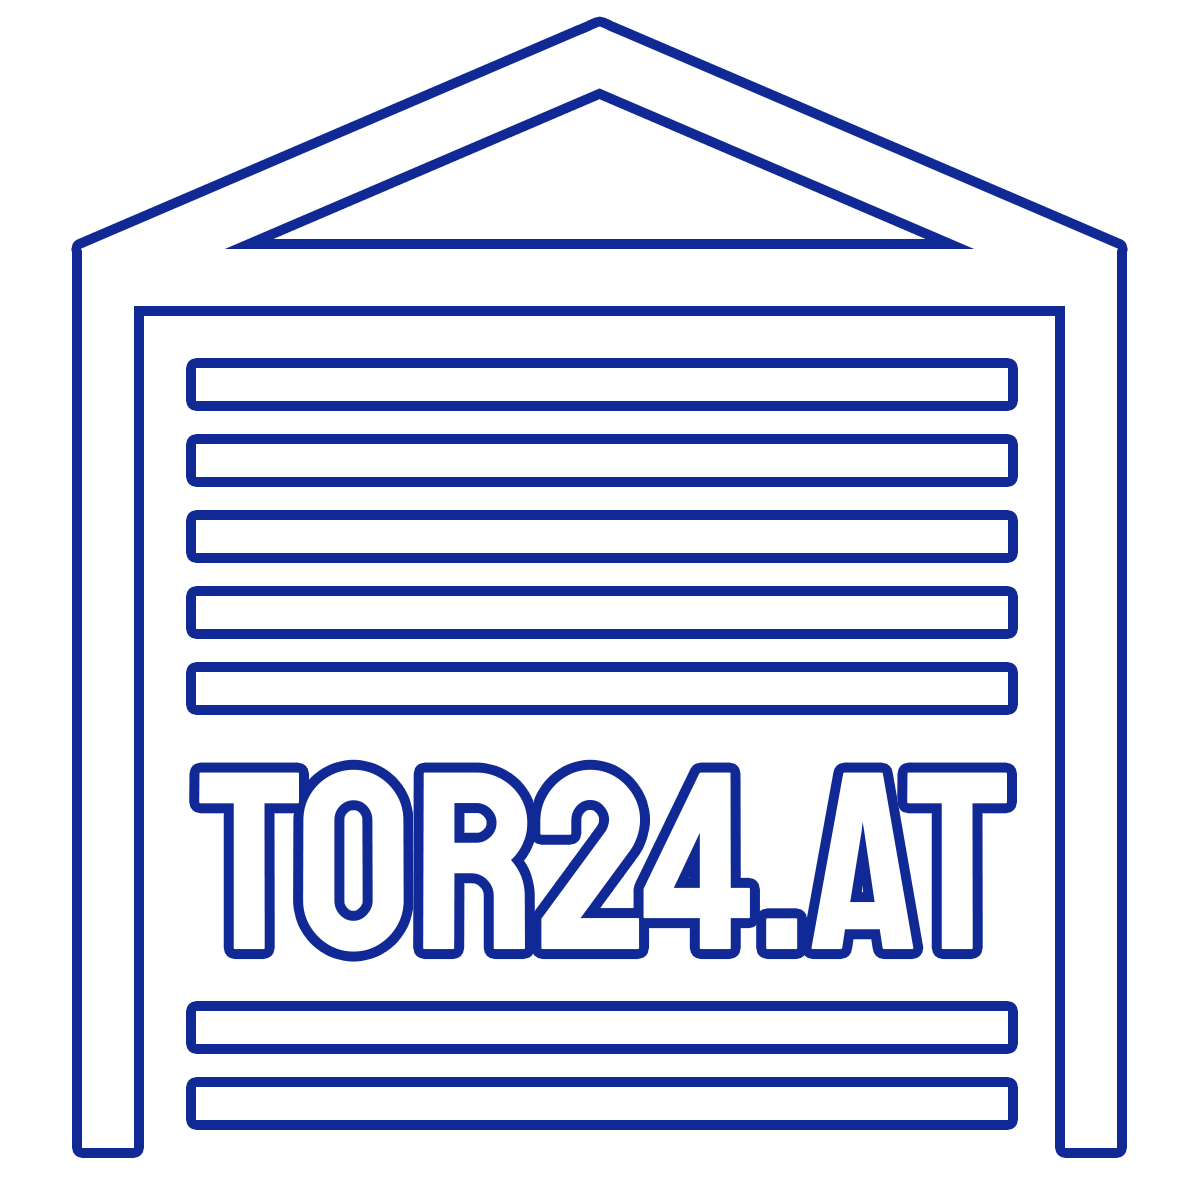 Tor24.at